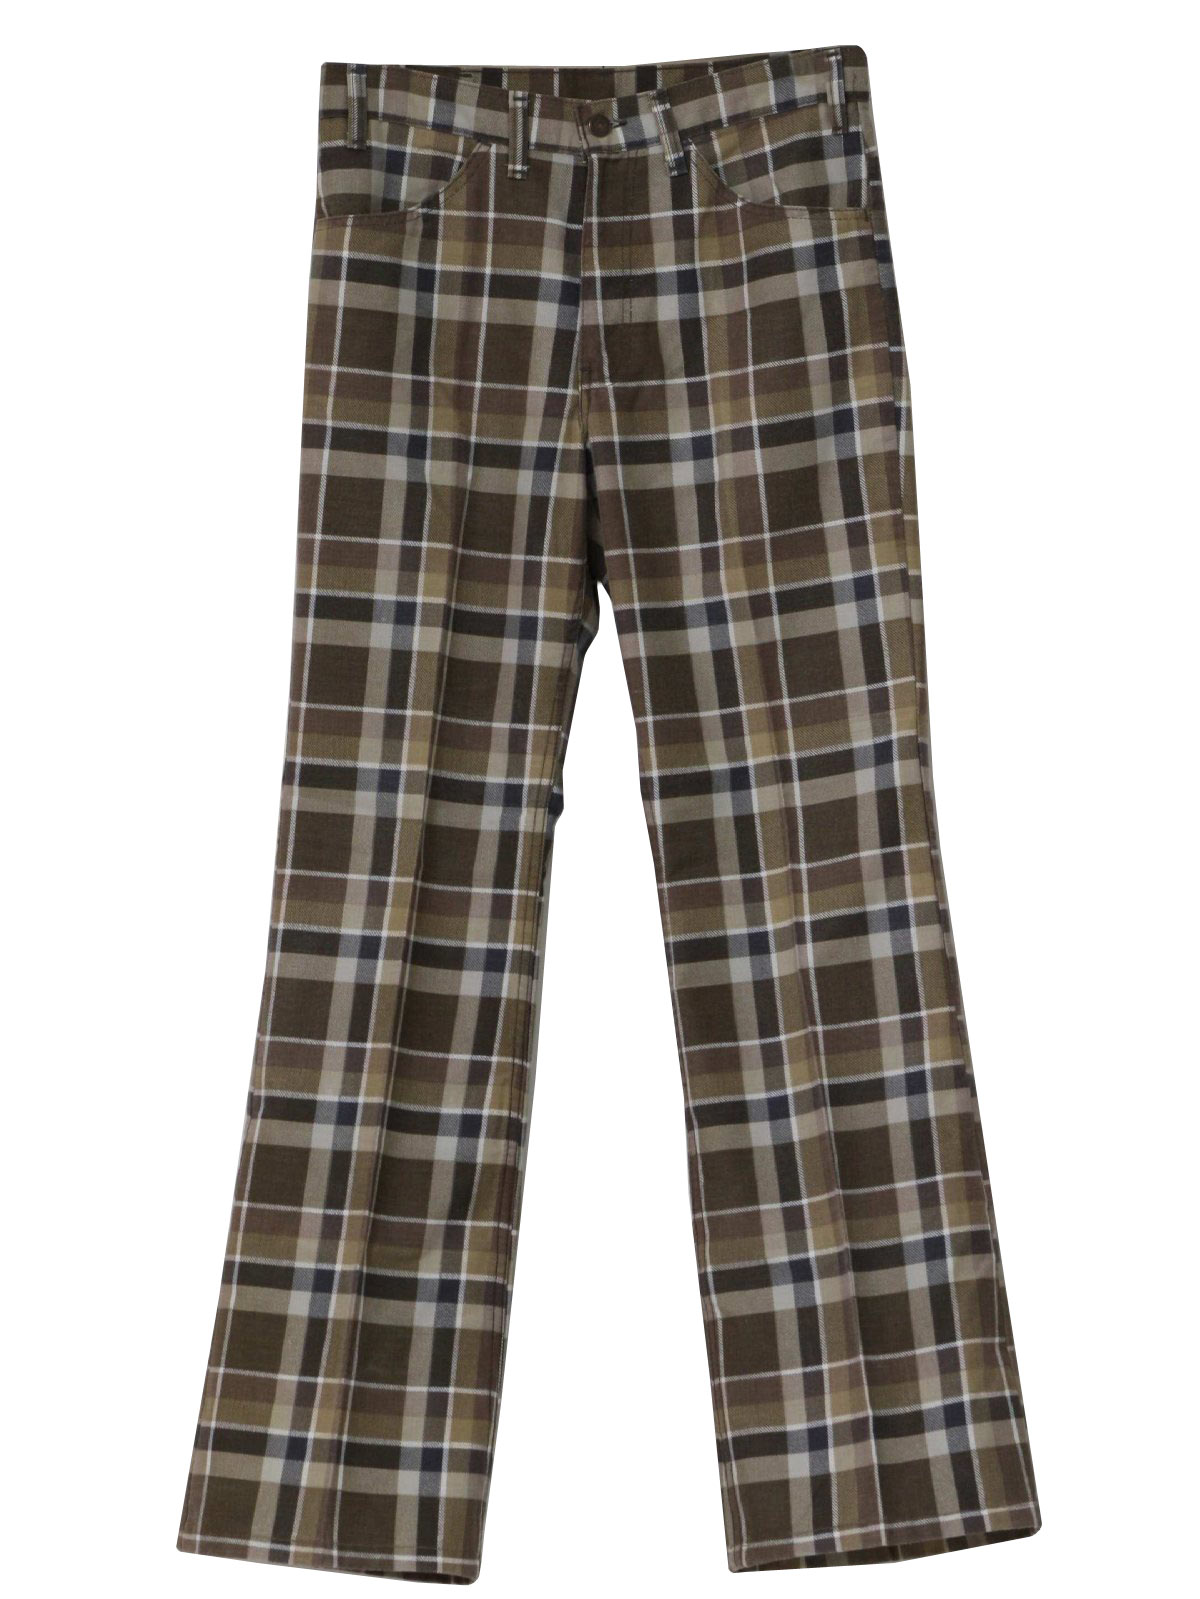 Brown Plaid Pants | Pant So